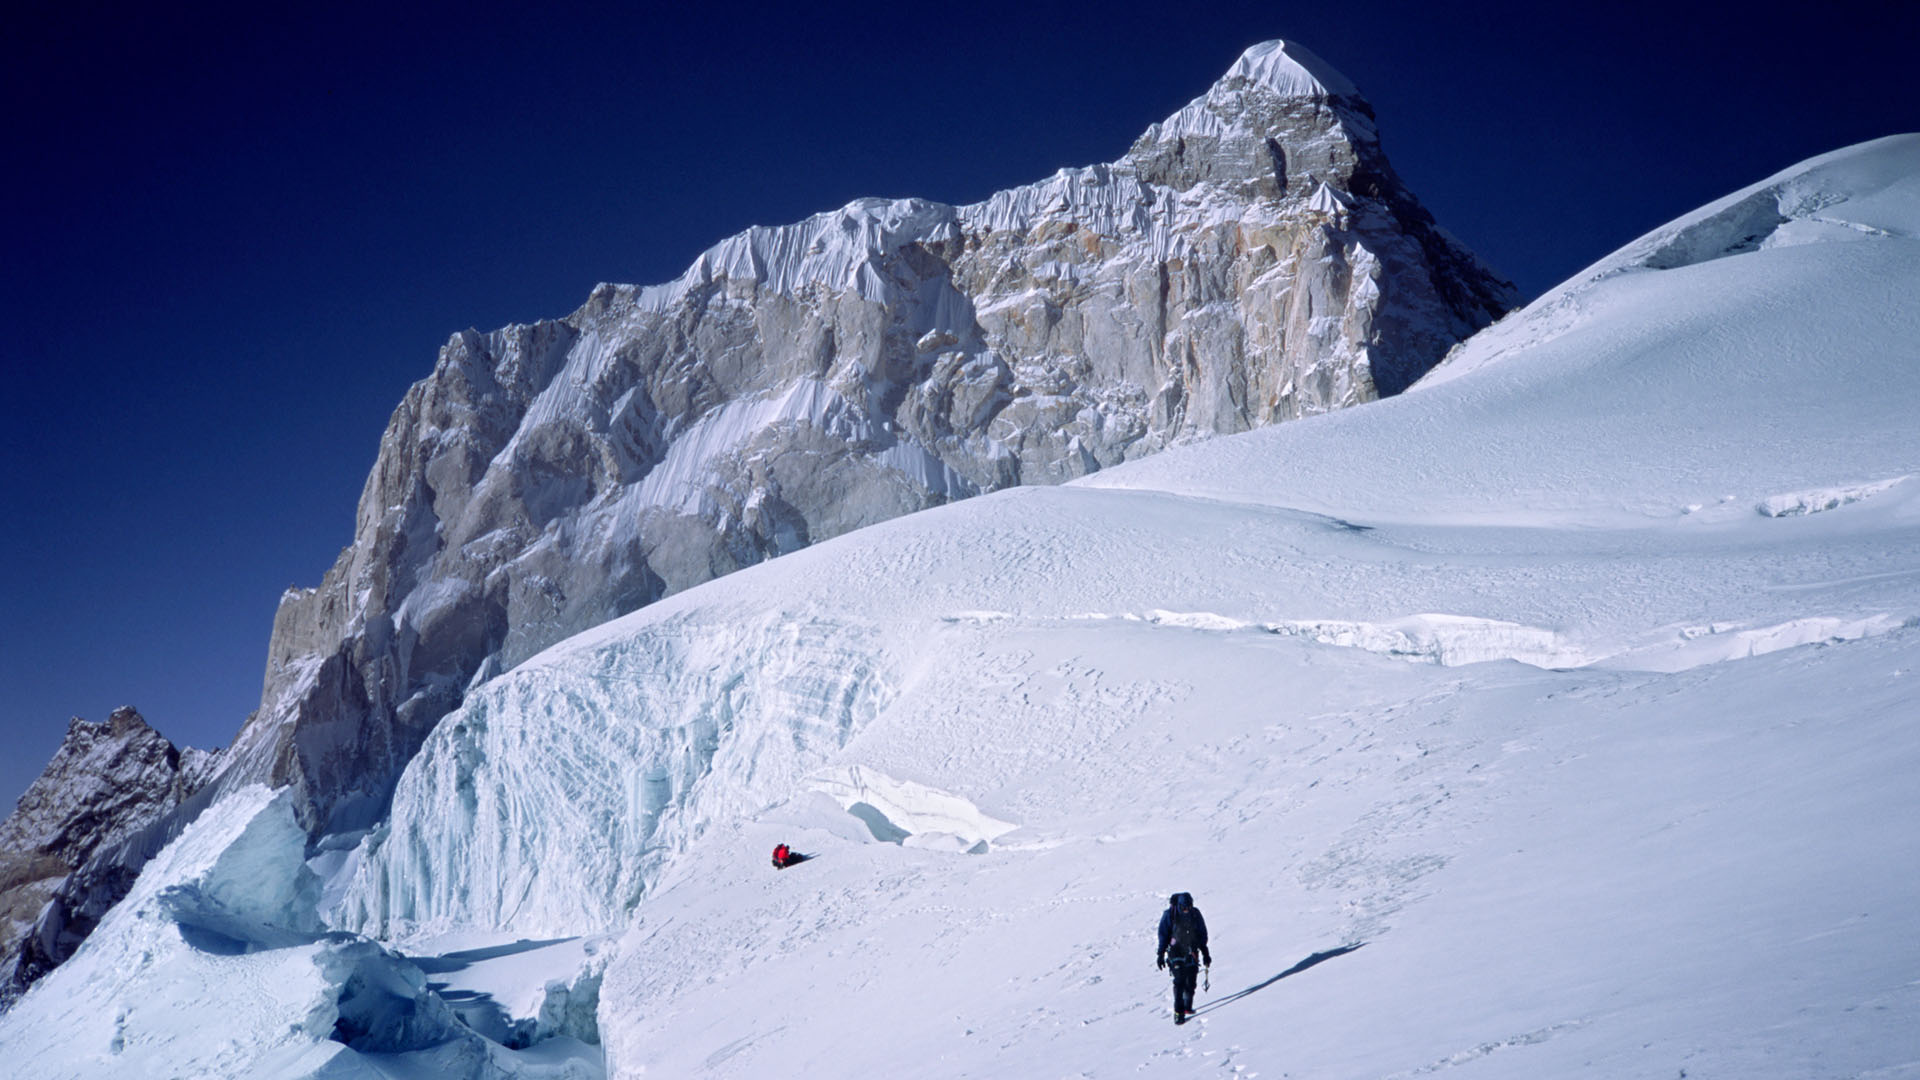 bhrigupanth expeditie - onderweg naar de top - bergbeklimmer Melvin Redeker